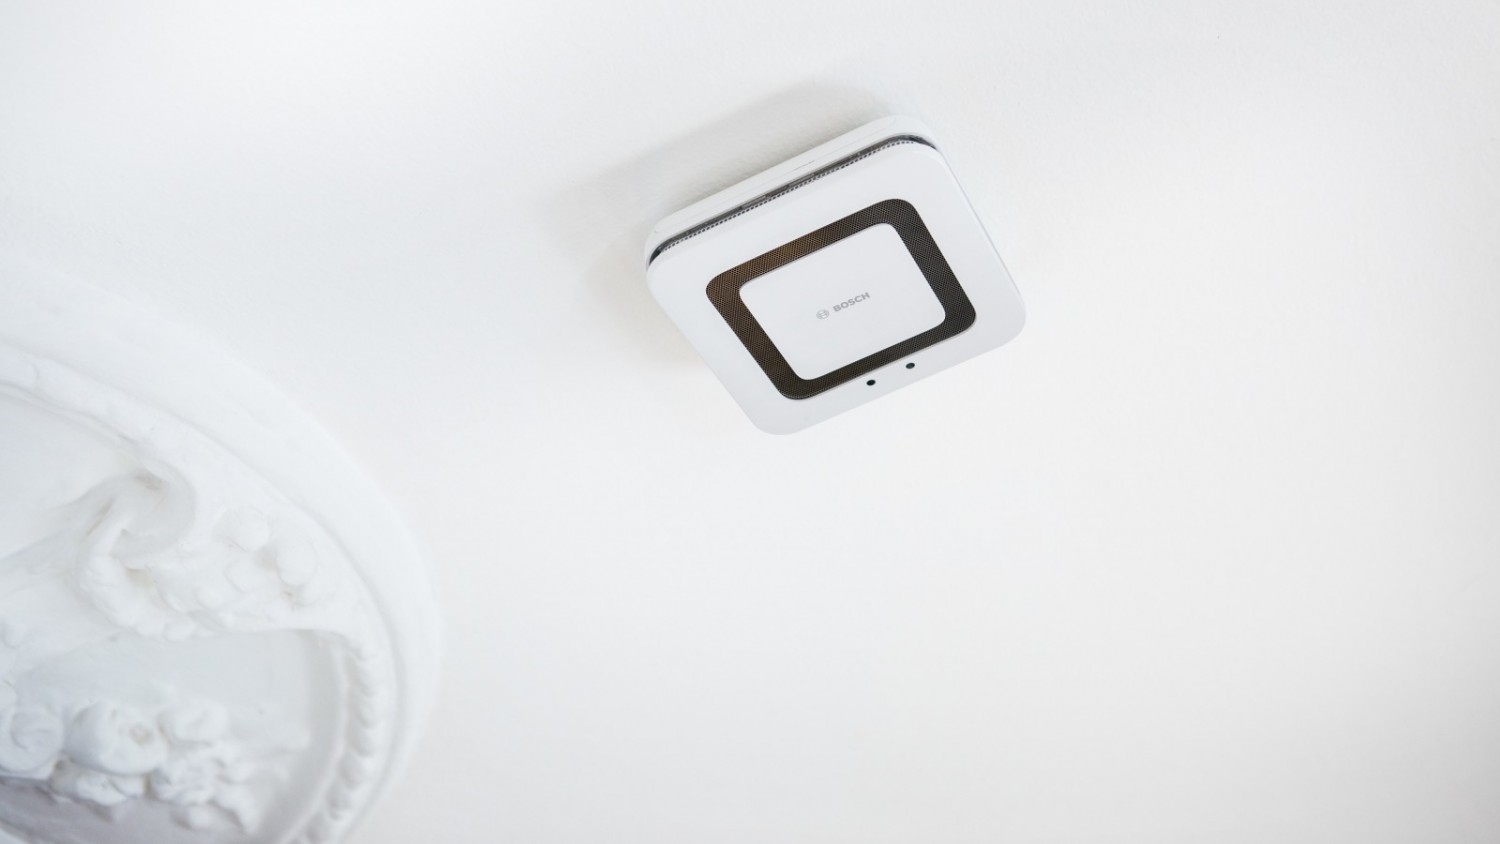 Produktvorstellung Bosch integriert Twinguard Rauchwarnmelder vollständig in sein Smart Home System - News, Bild 1